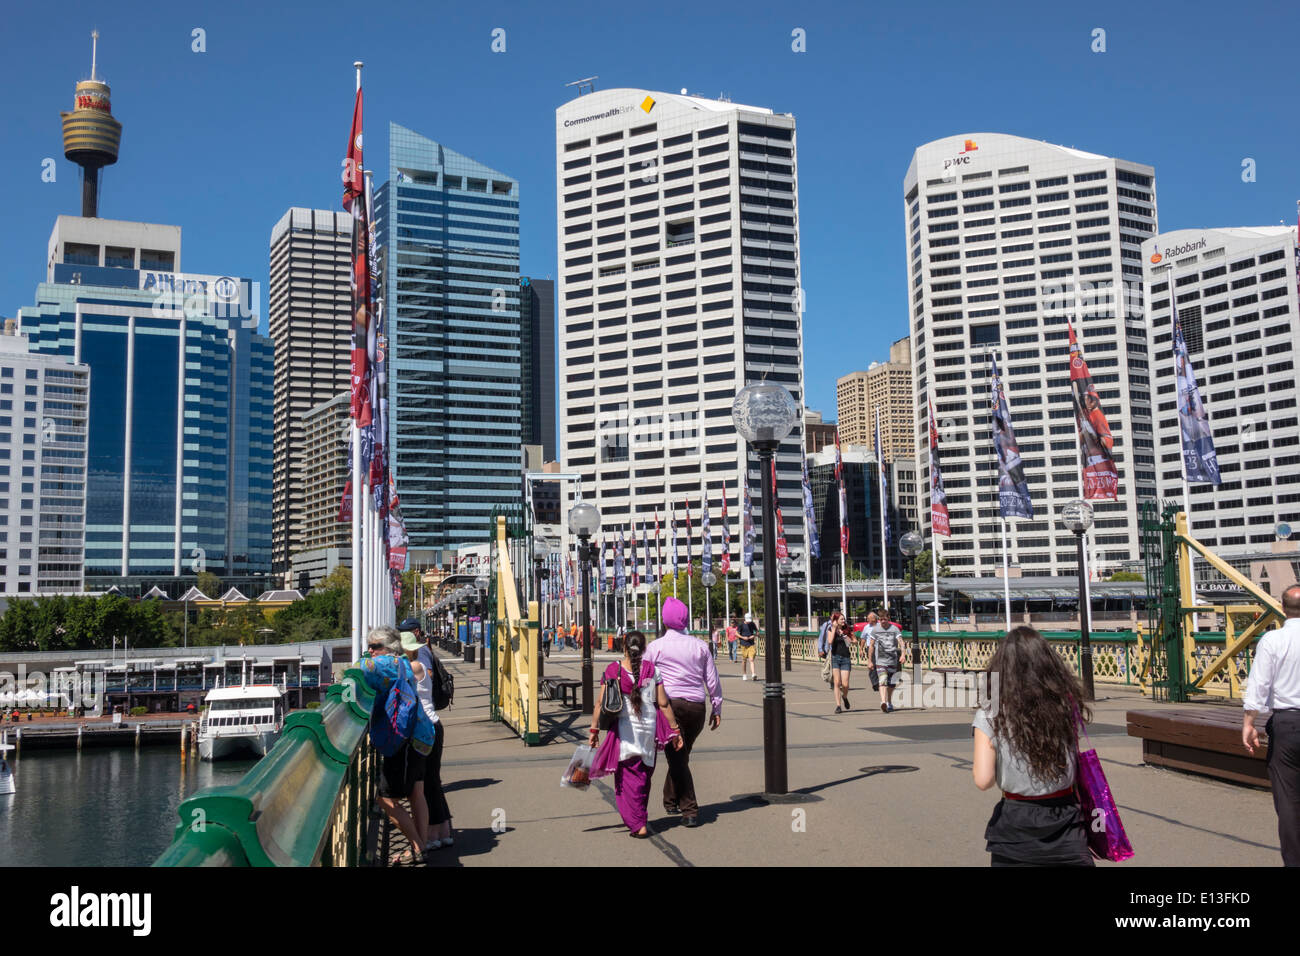 Sydney Australien, Darling Harbour, Hafen, Pyrmont Bridge, Wandern, Cockle Bay, Wolkenkratzer, Skyline der Stadt, Sydney Tower, AU140311039 Stockfoto